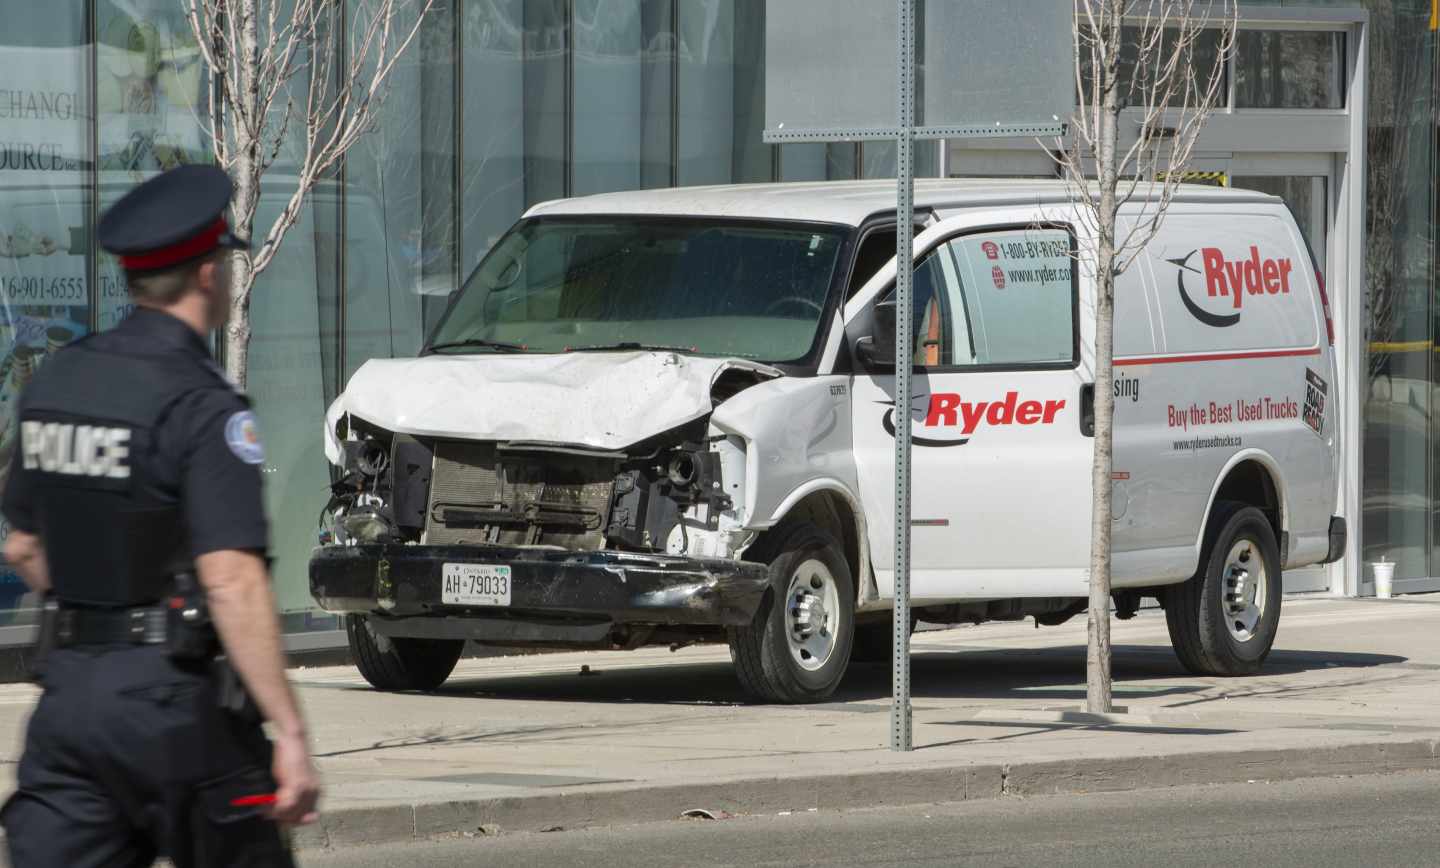 La furgoneta que ha provocado el atropello mortal en Toronto.